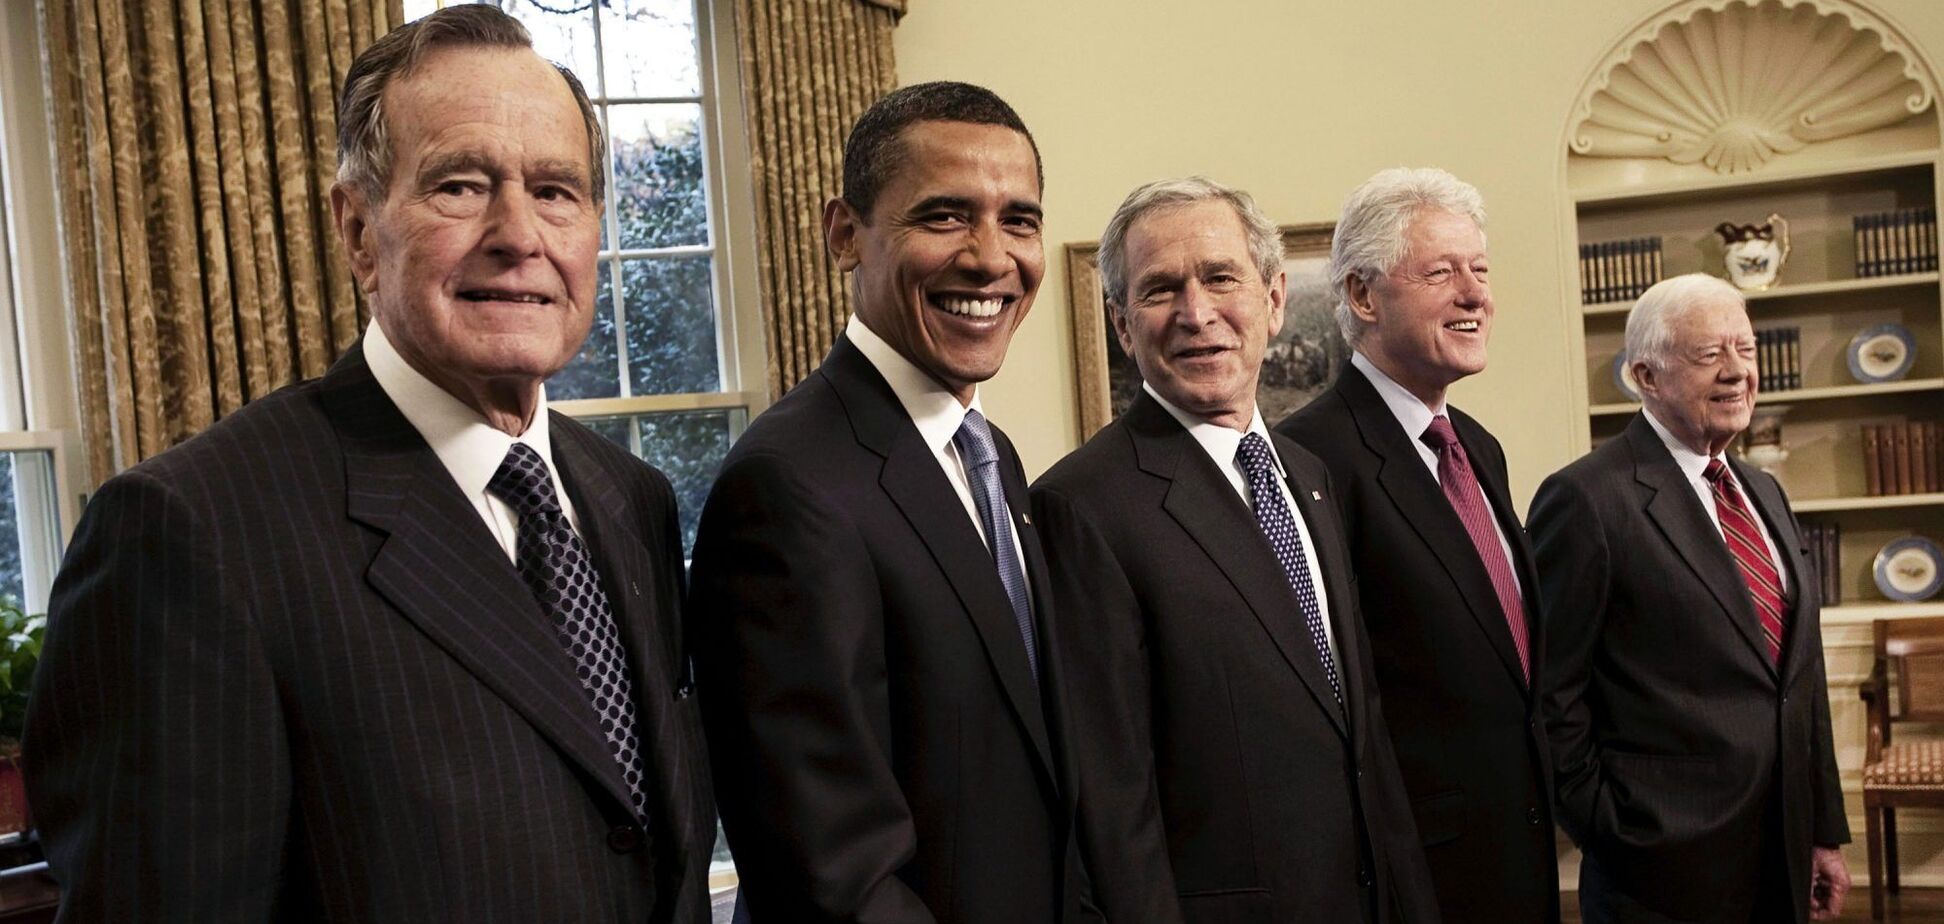 Джордж Буш-старший, Барак Обама, Джордж Буш-младший, Билл Клинтон и Джимми Картер